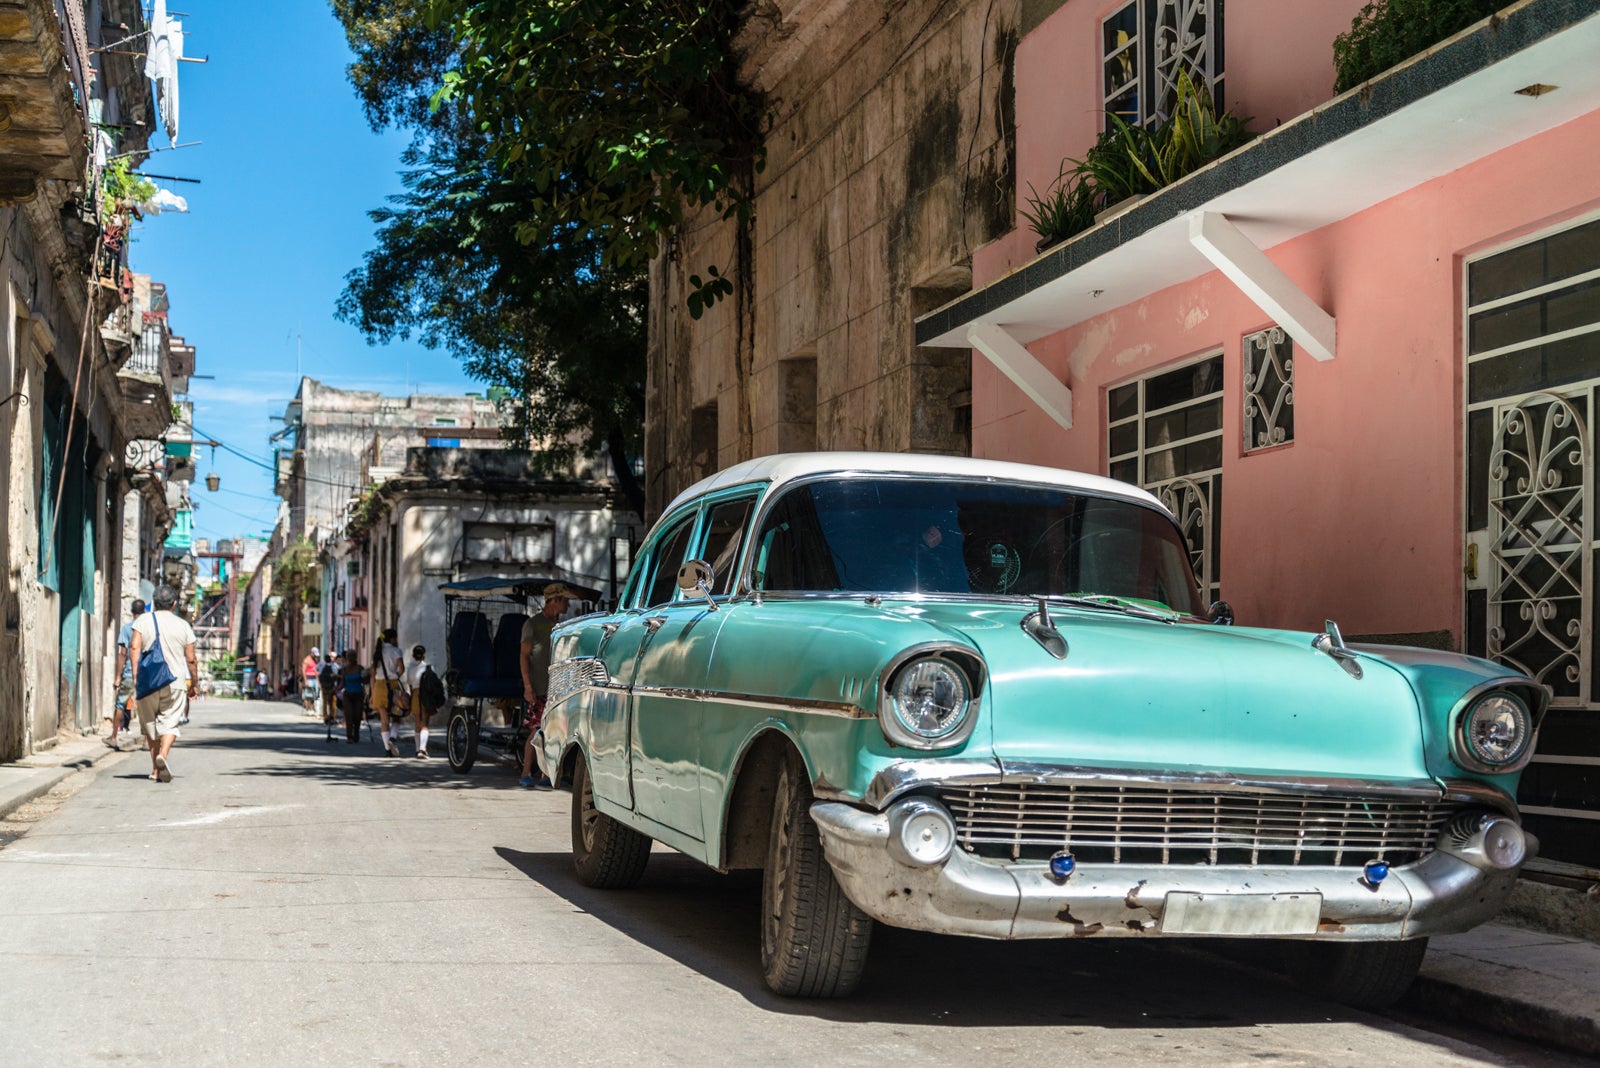 Cuba car city streats